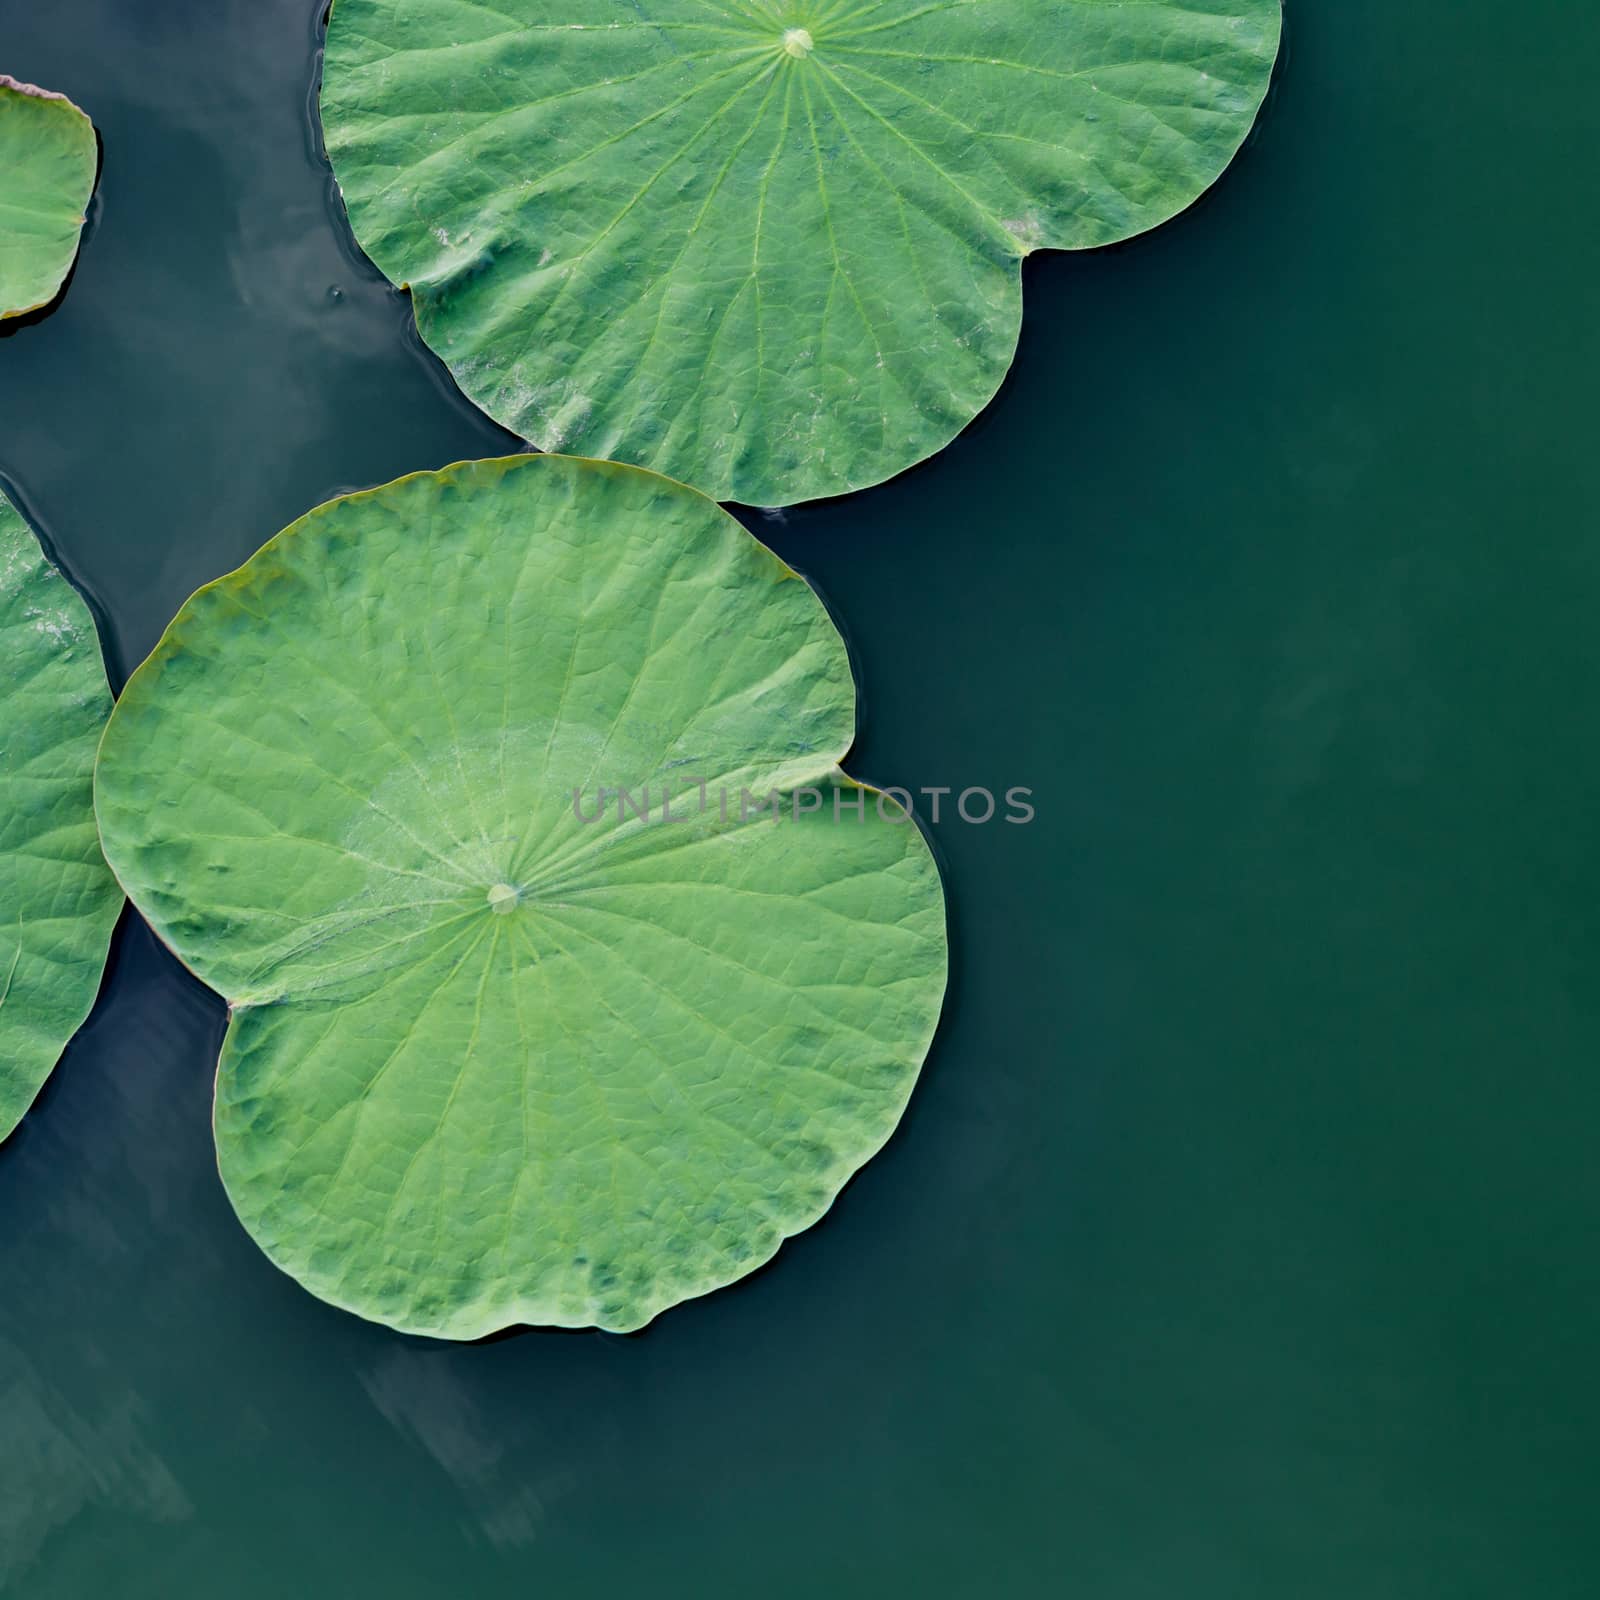 Green lotus leaf in the lake. by kerdkanno